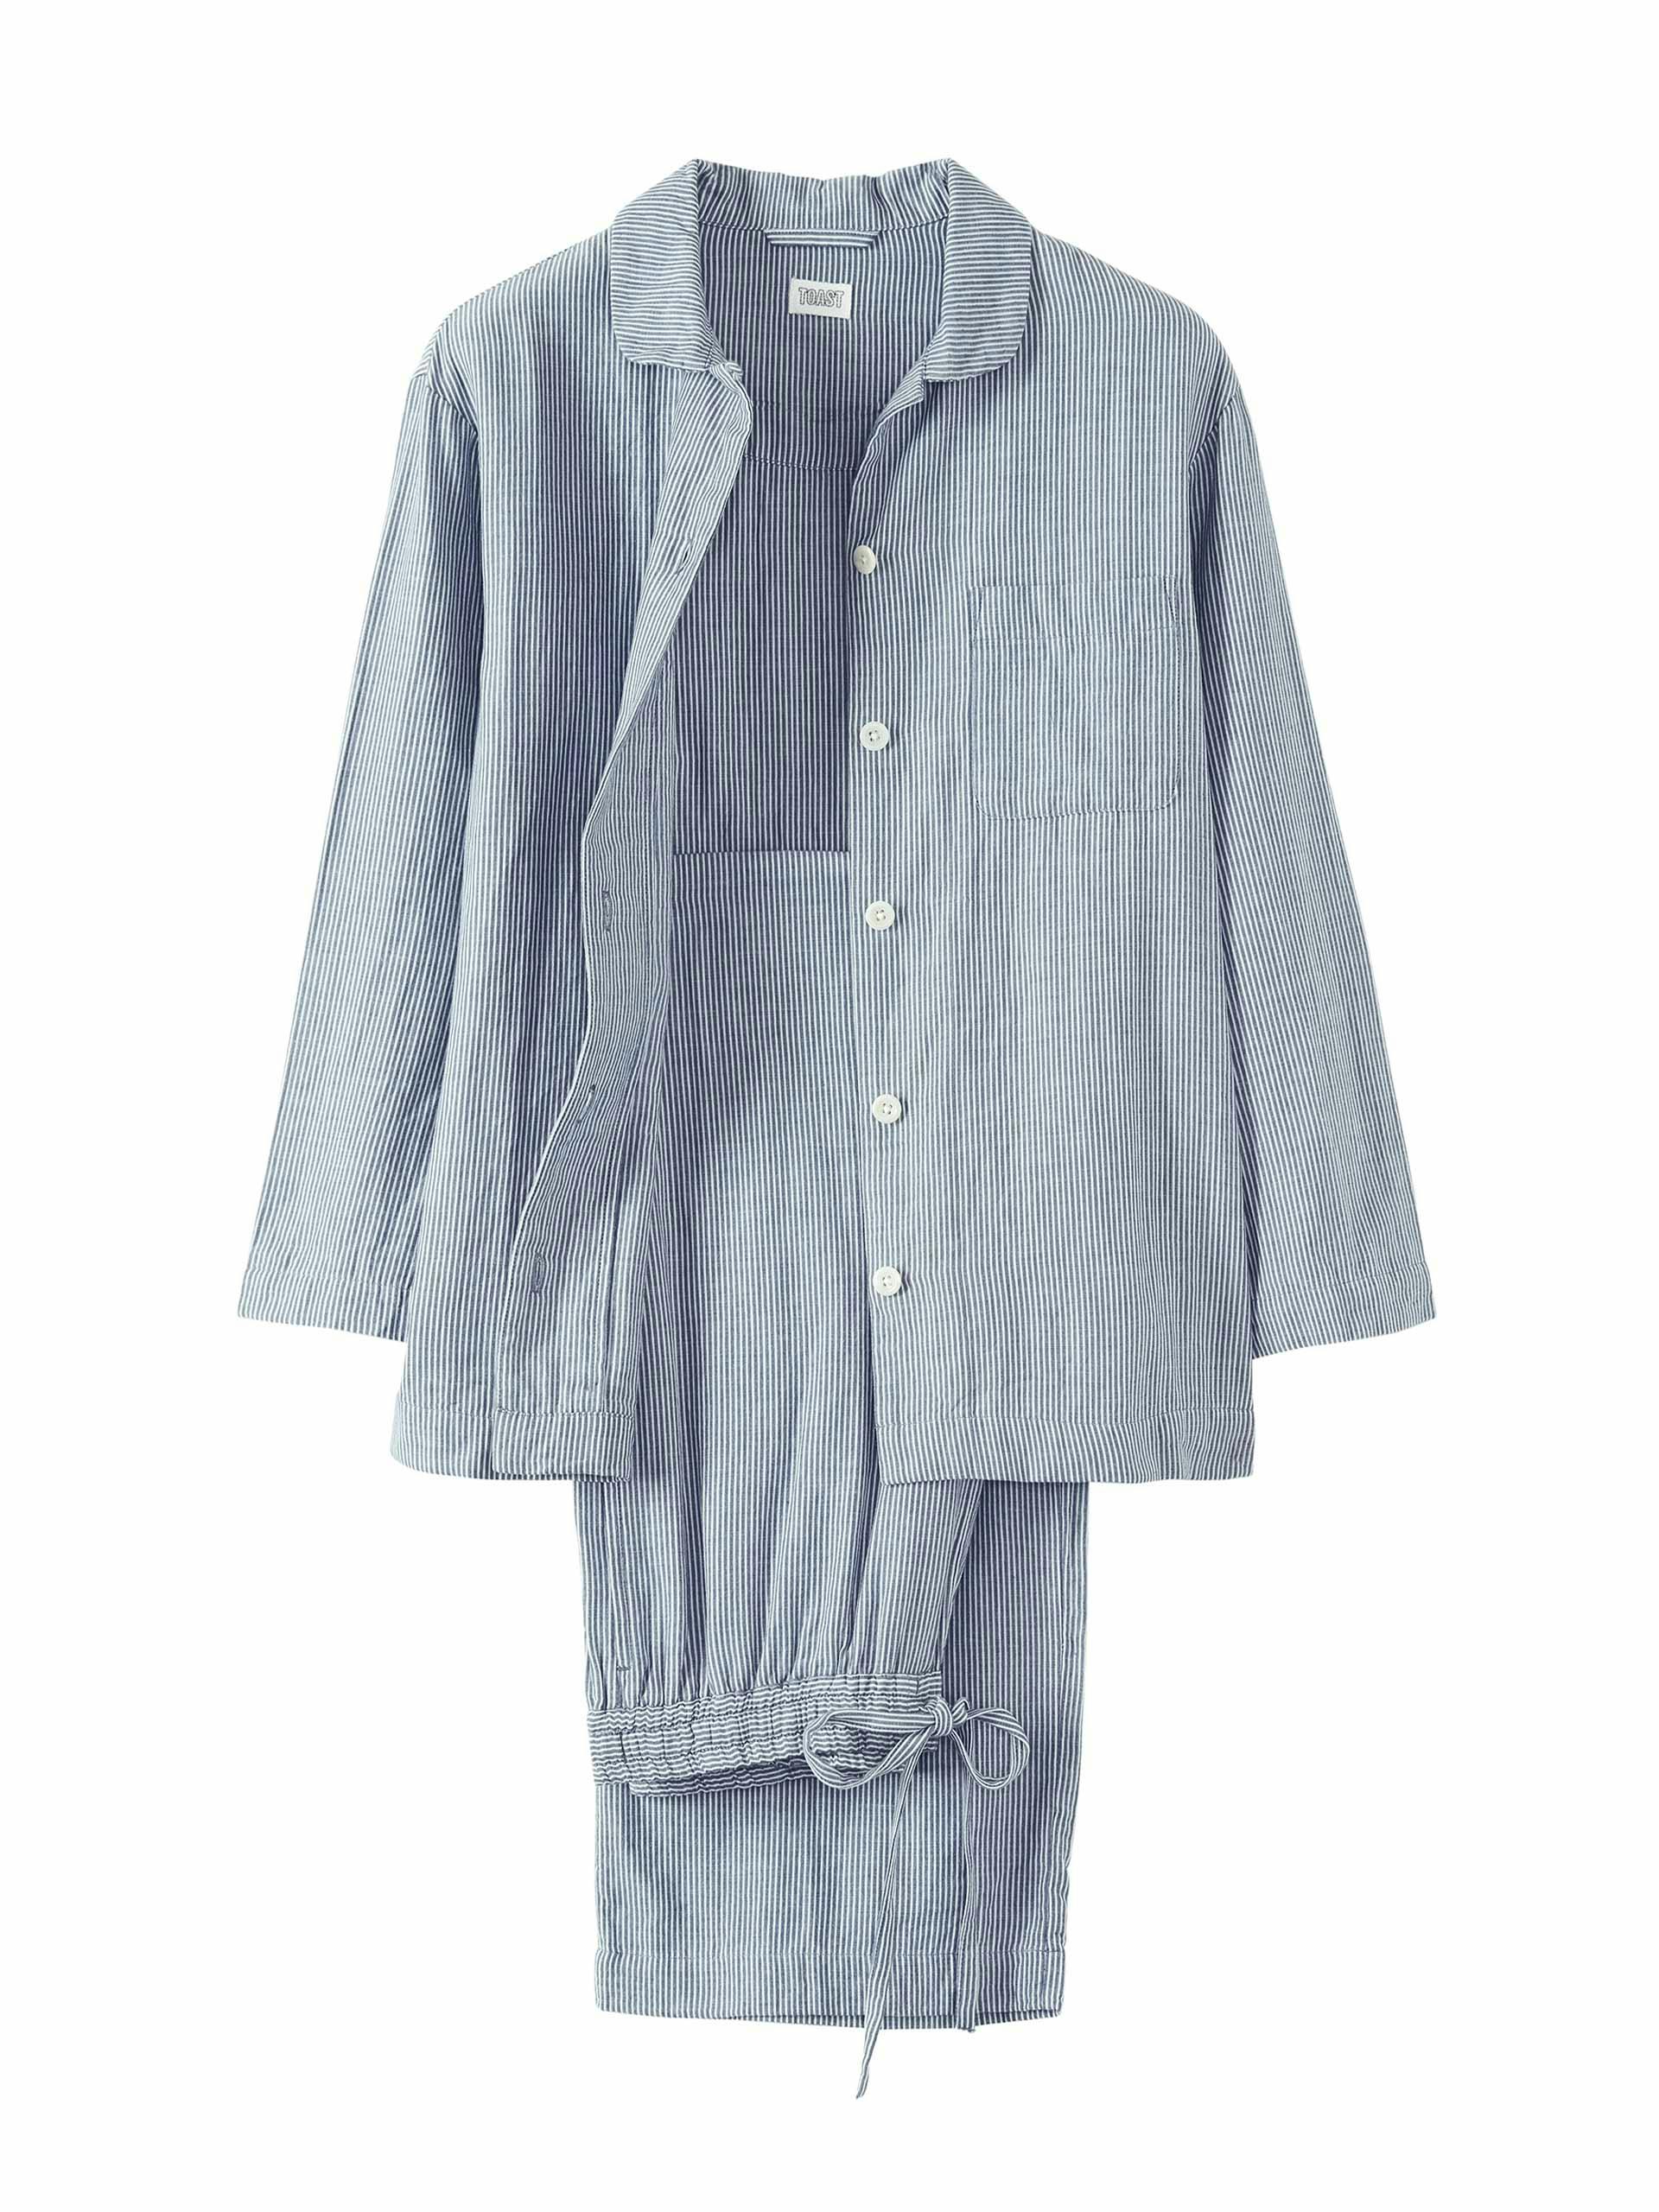 Striped cotton pyjamas